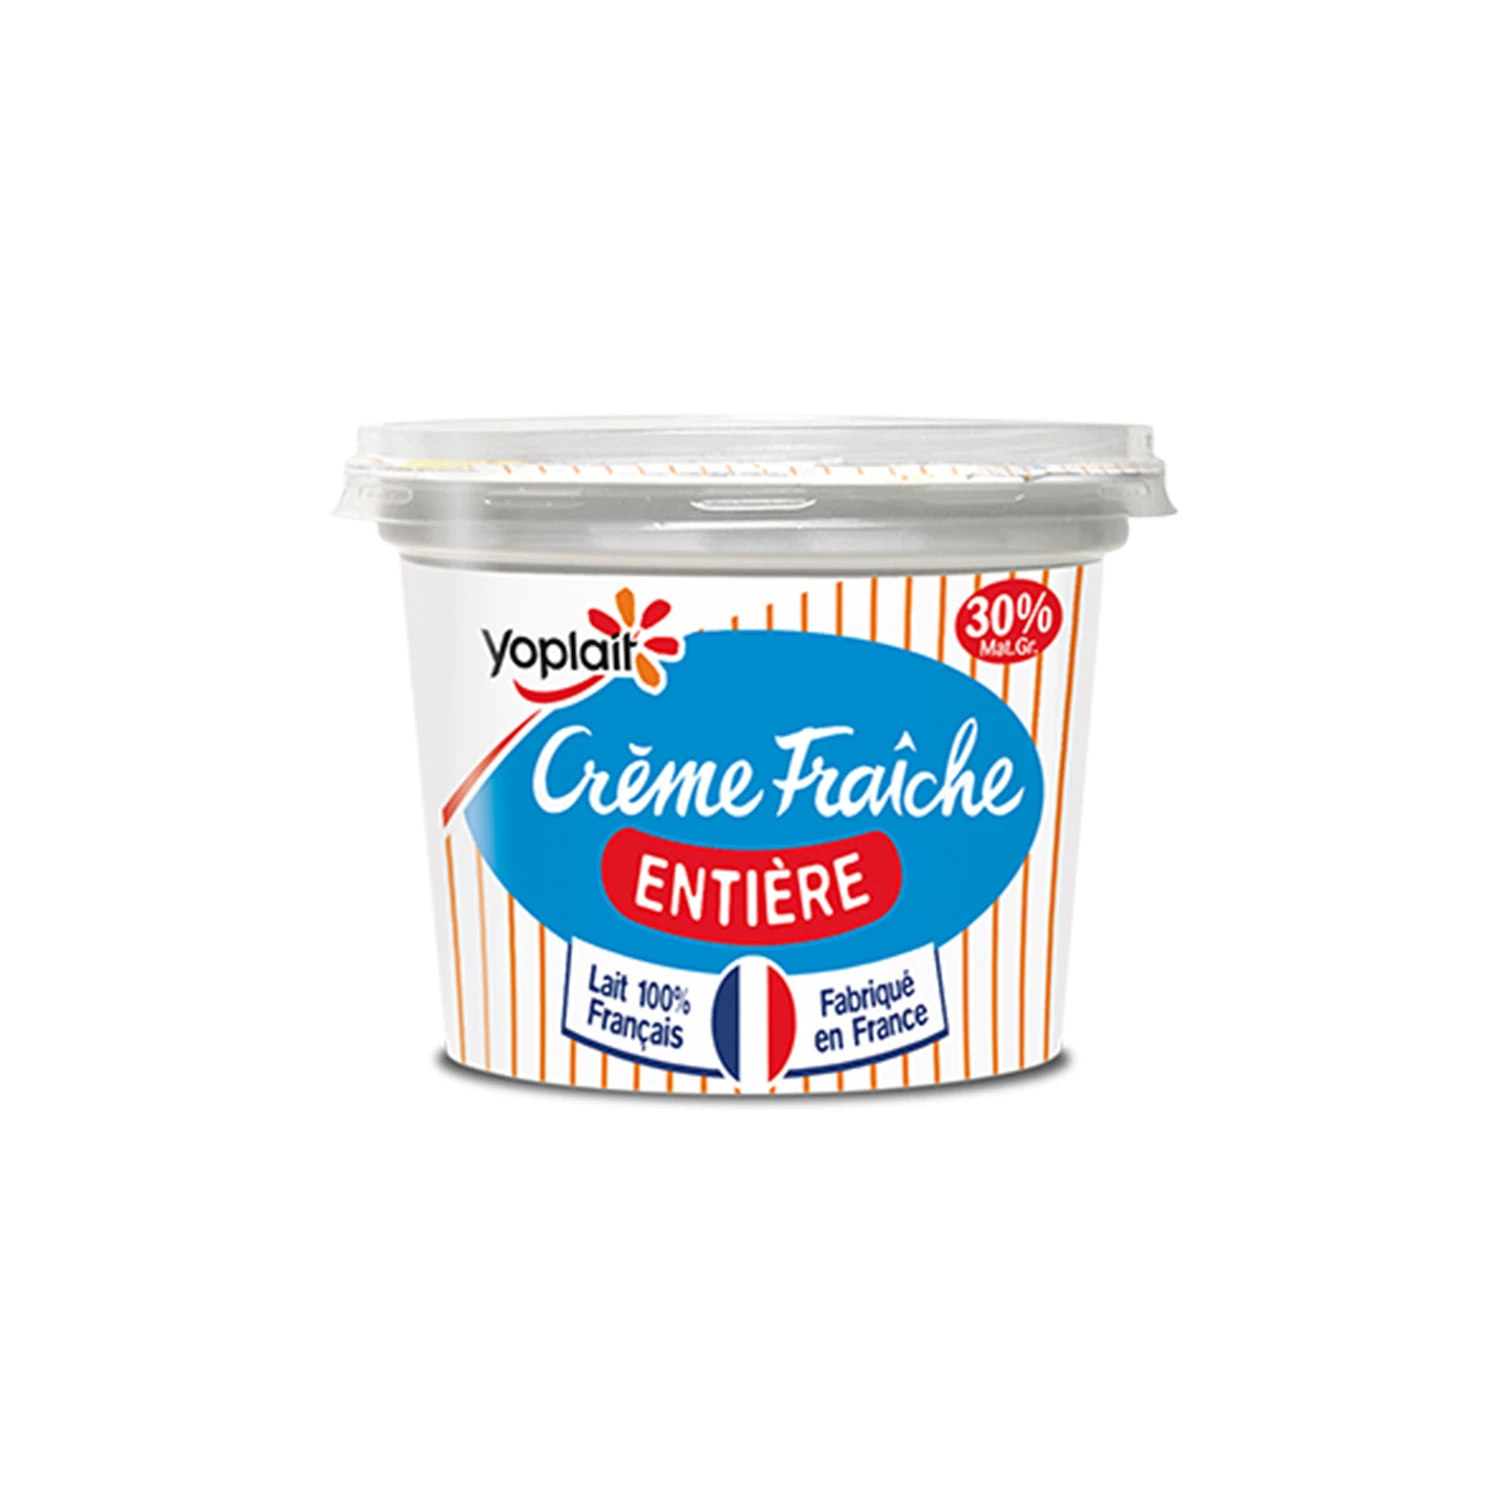 Crème Fraiche Epaisse 30 190g